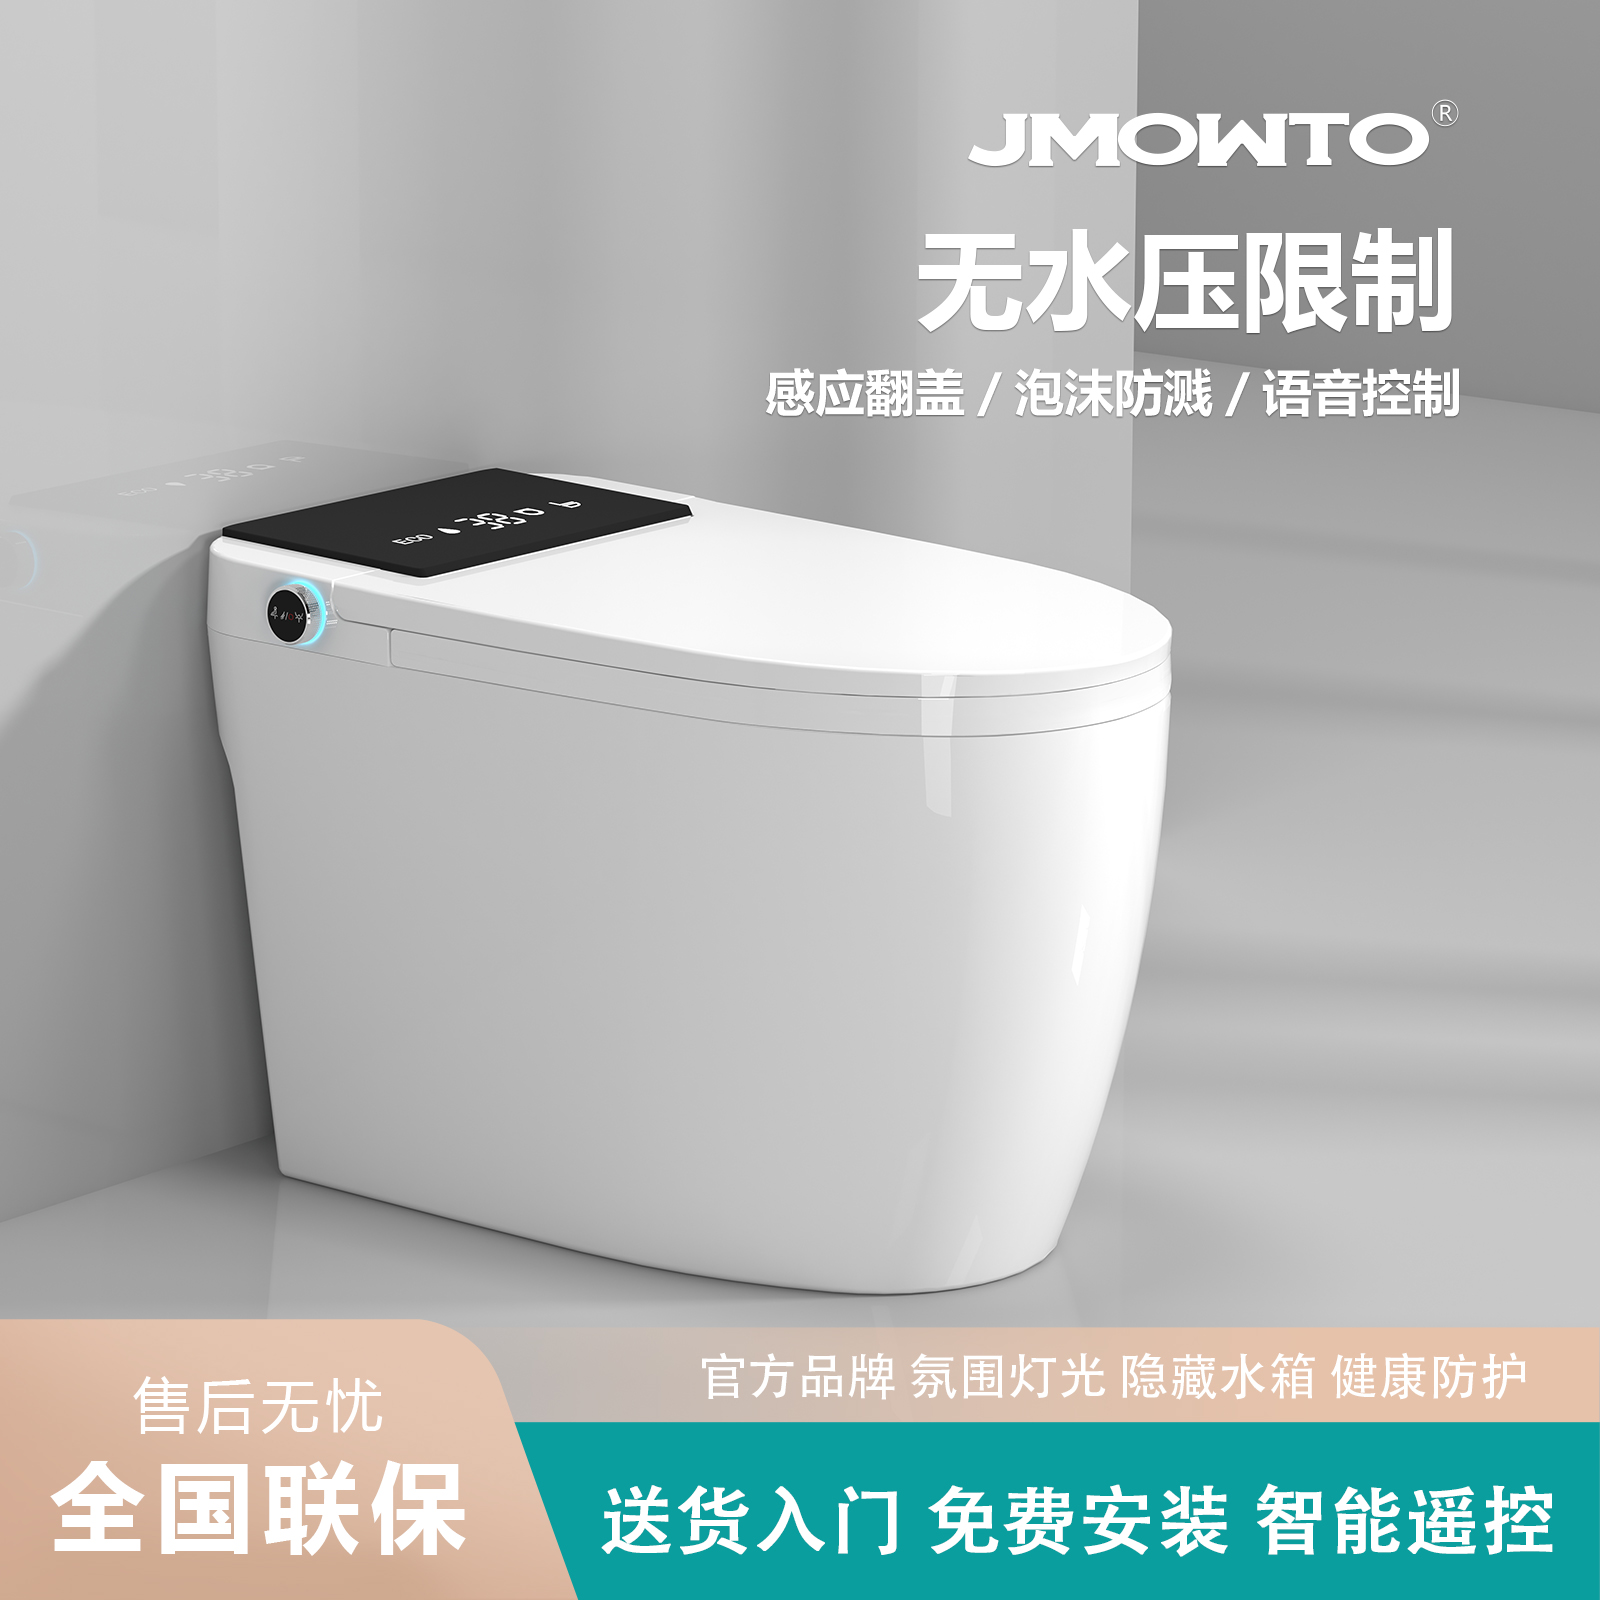 JMOWTO家用轻智能马桶多功能全自动防臭杀菌即热一体虹吸式坐便器